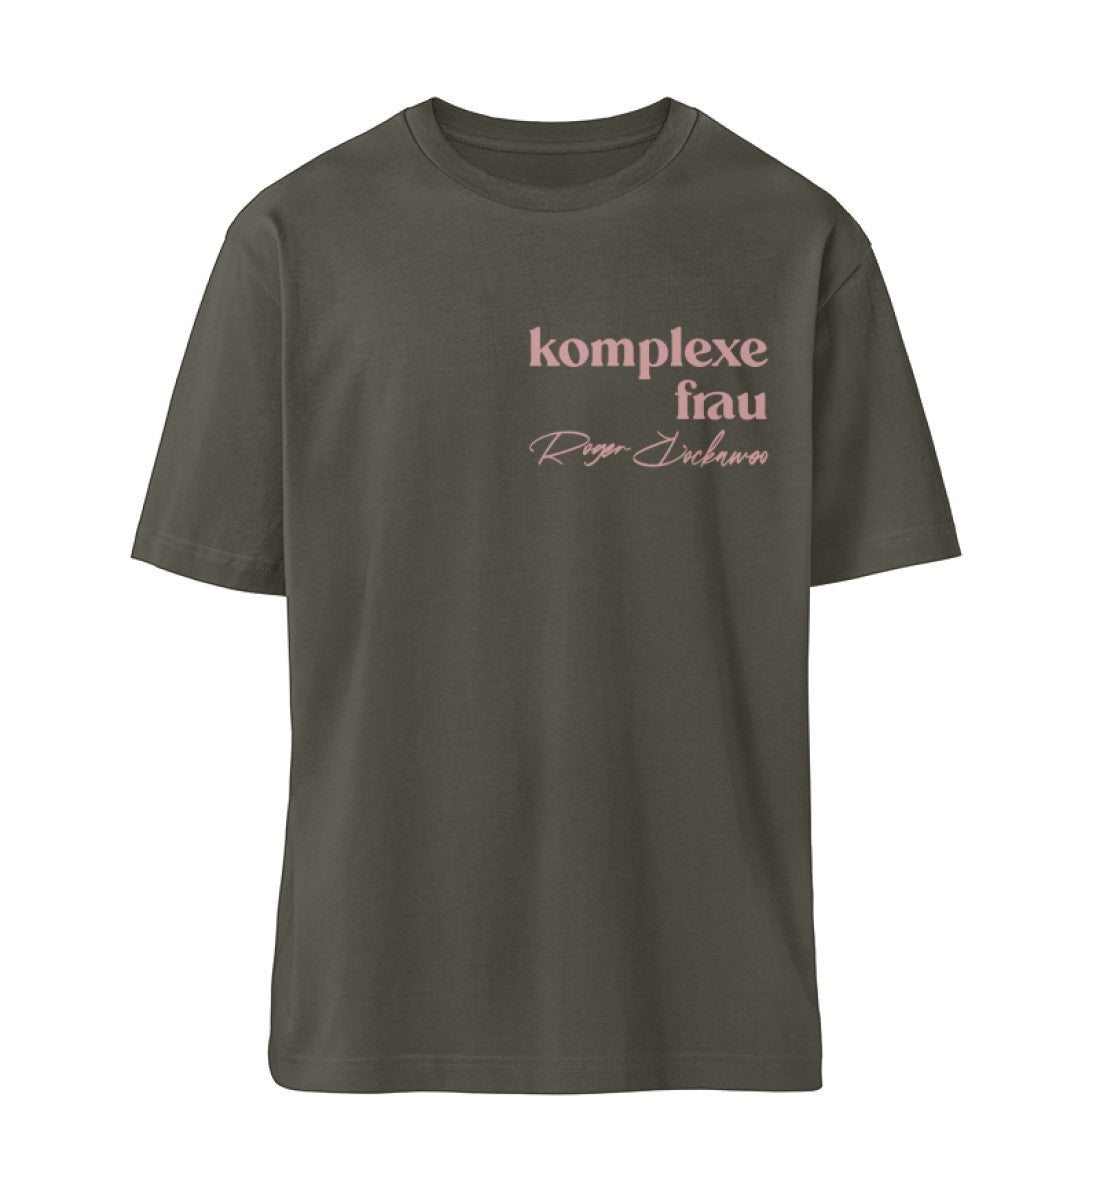 Khaki T-Shirt für Frauen und Maenner mit dem Design aus der Roger Rockawoo Kollektion Komplexe Frau